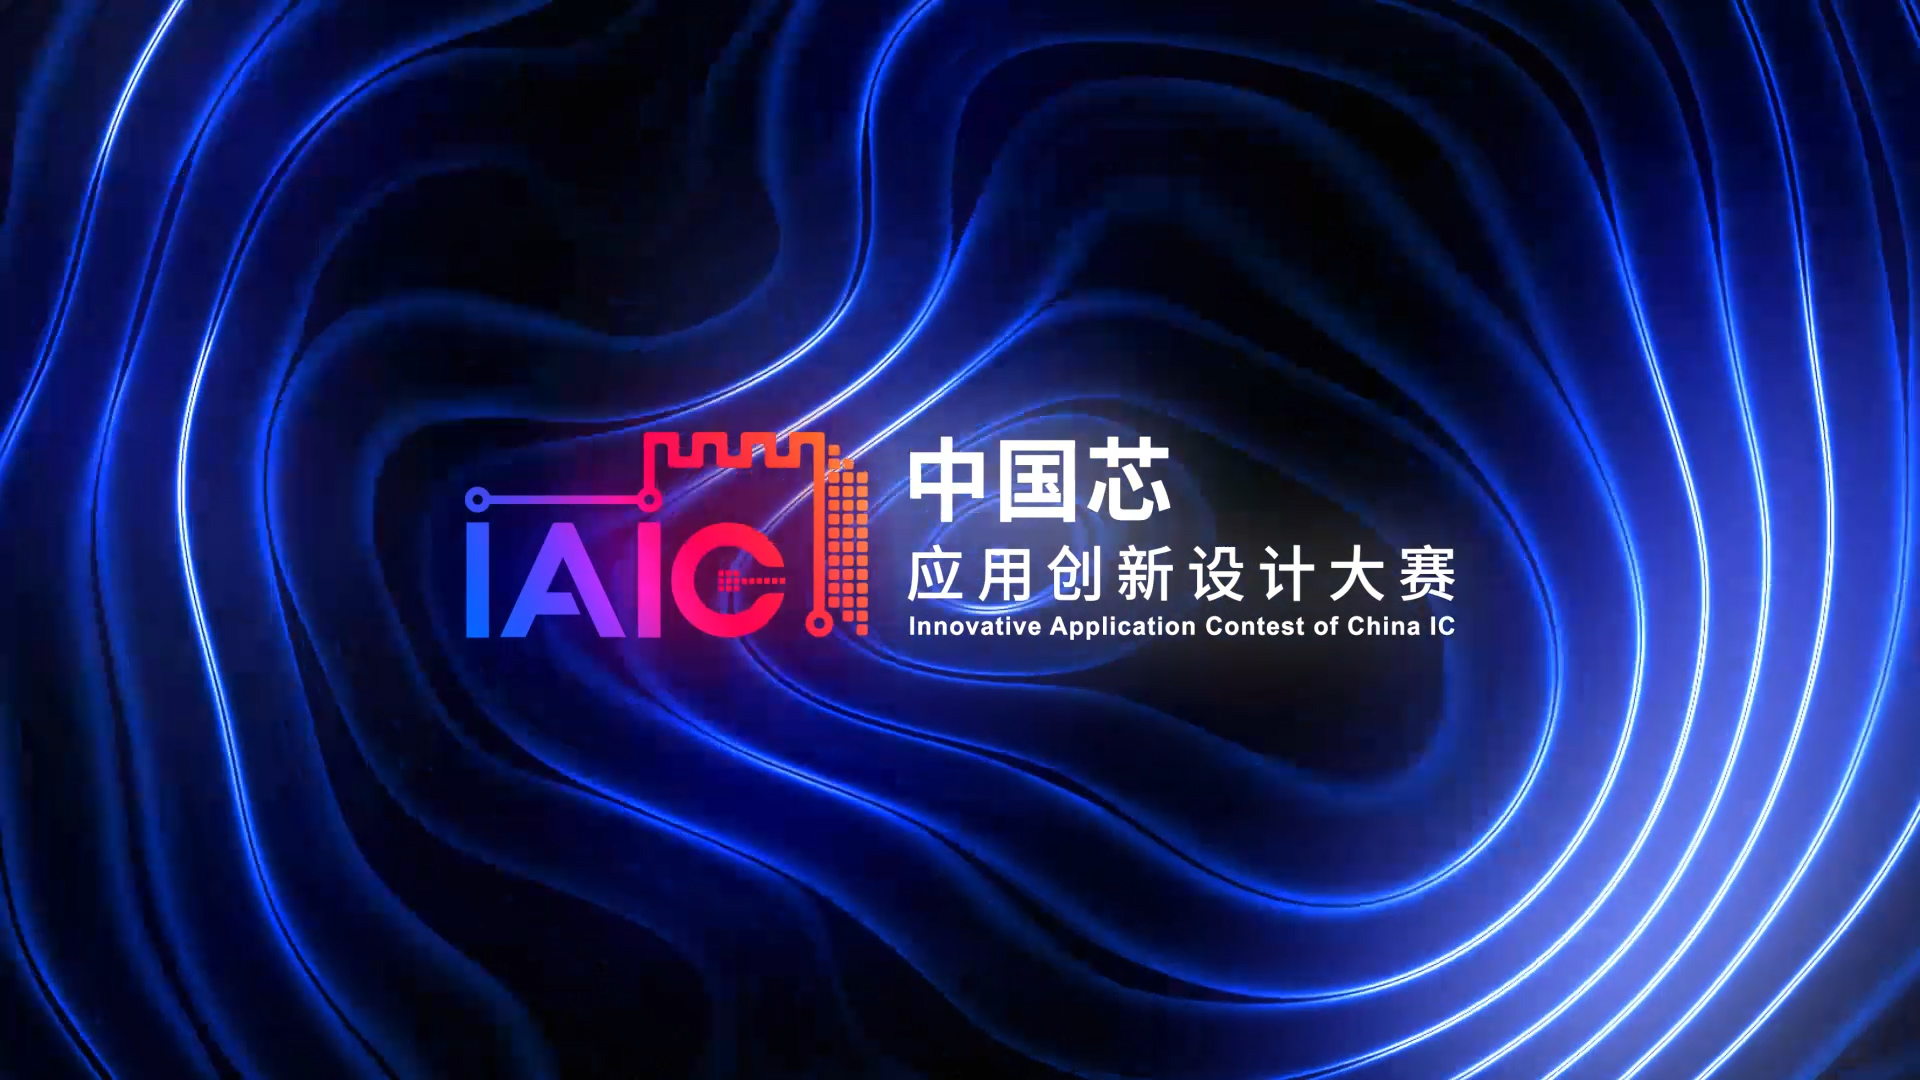 立即报名让IAIC大赛为您采用中国芯的创新项目赋能！